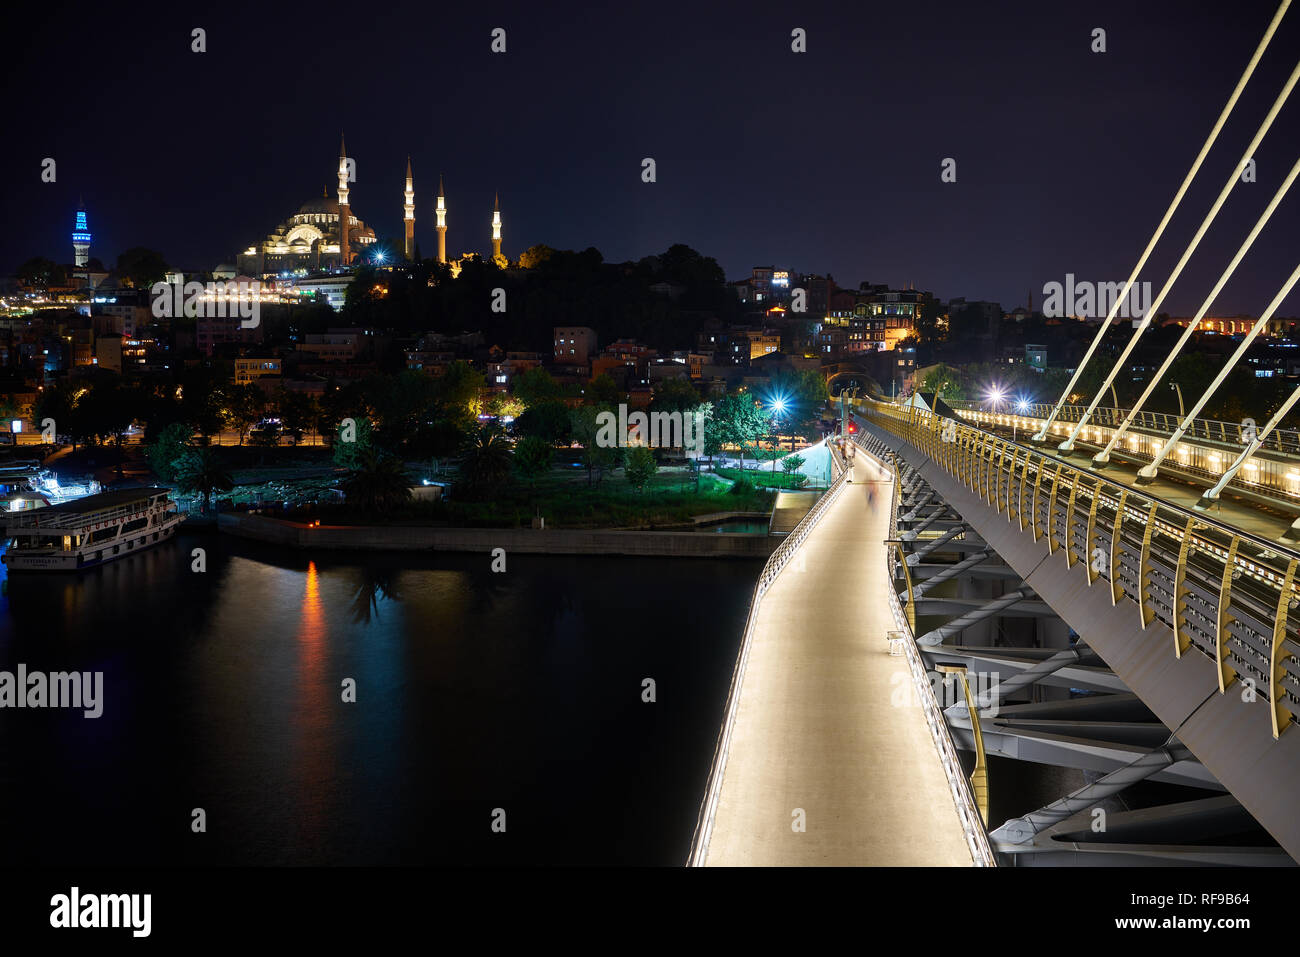 La Mosquée Suleymaniye et la station de métro Halic en soirée avec lumières de la ville. Panorama urbain pris du pont de métro, Istanbul Turquie. Banque D'Images